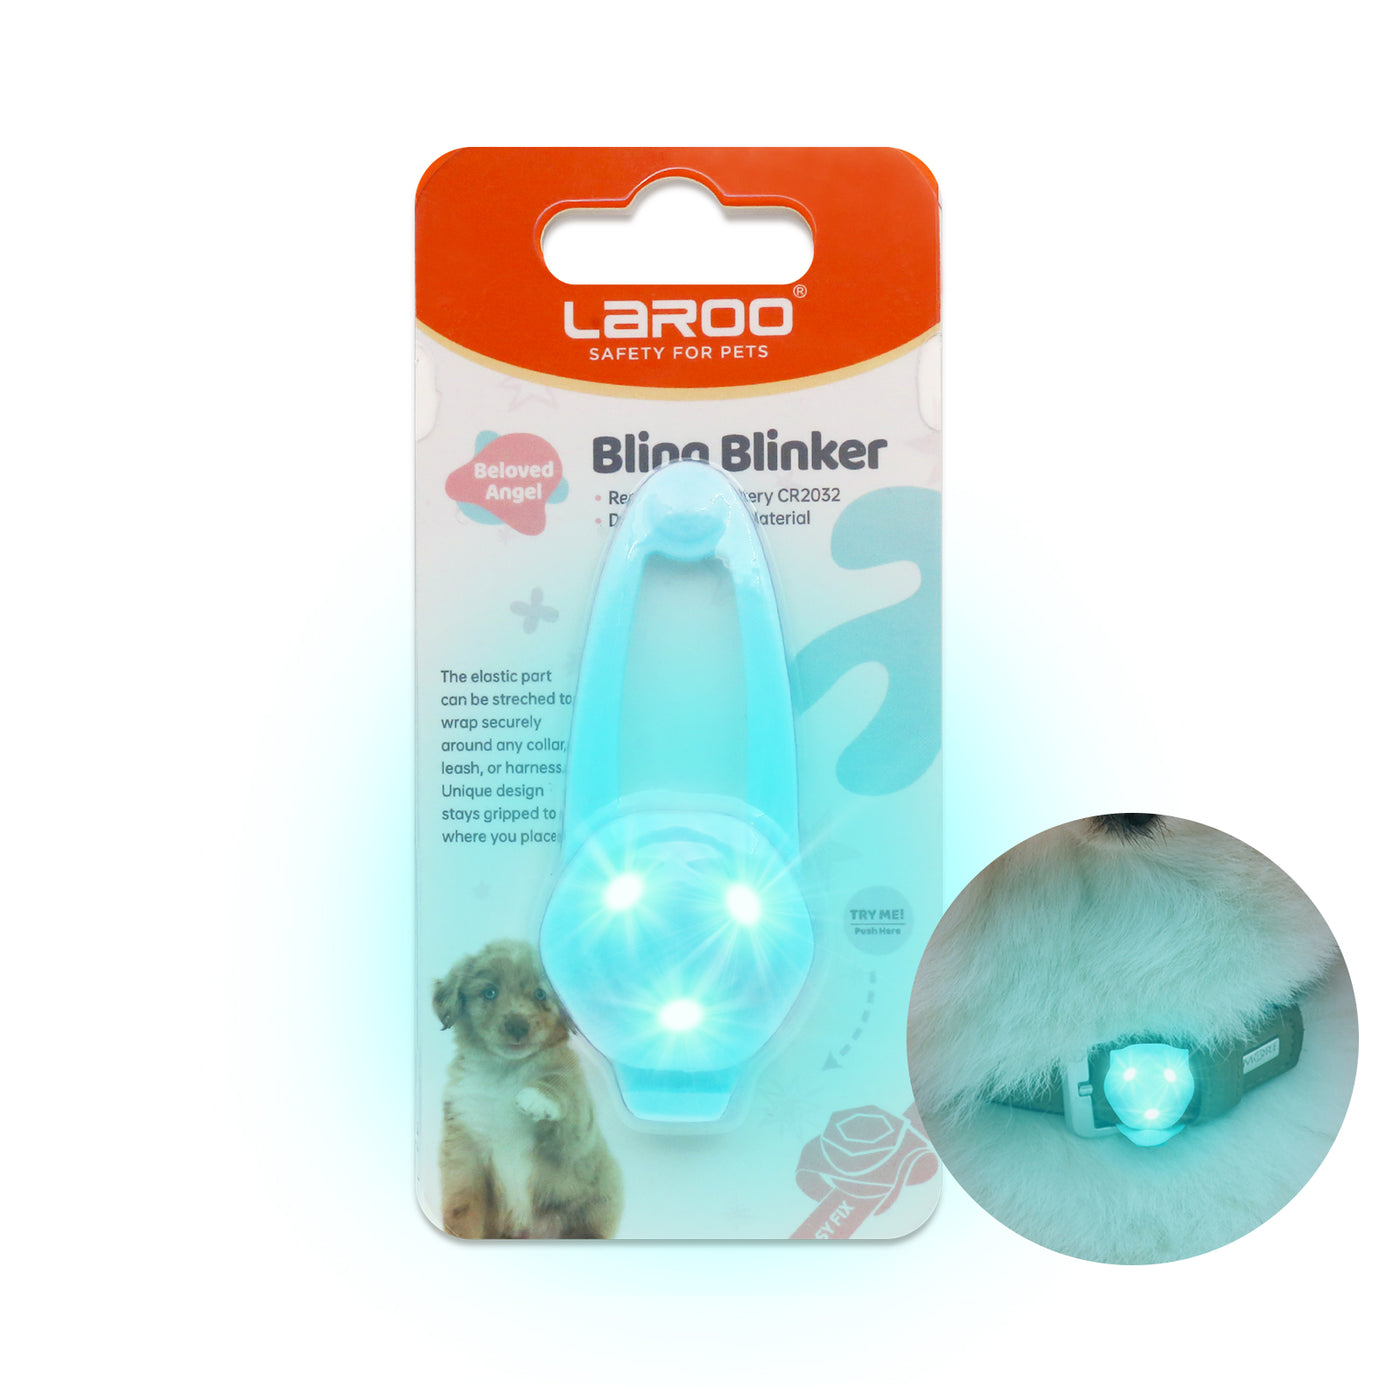 Bling Blinker LED Light